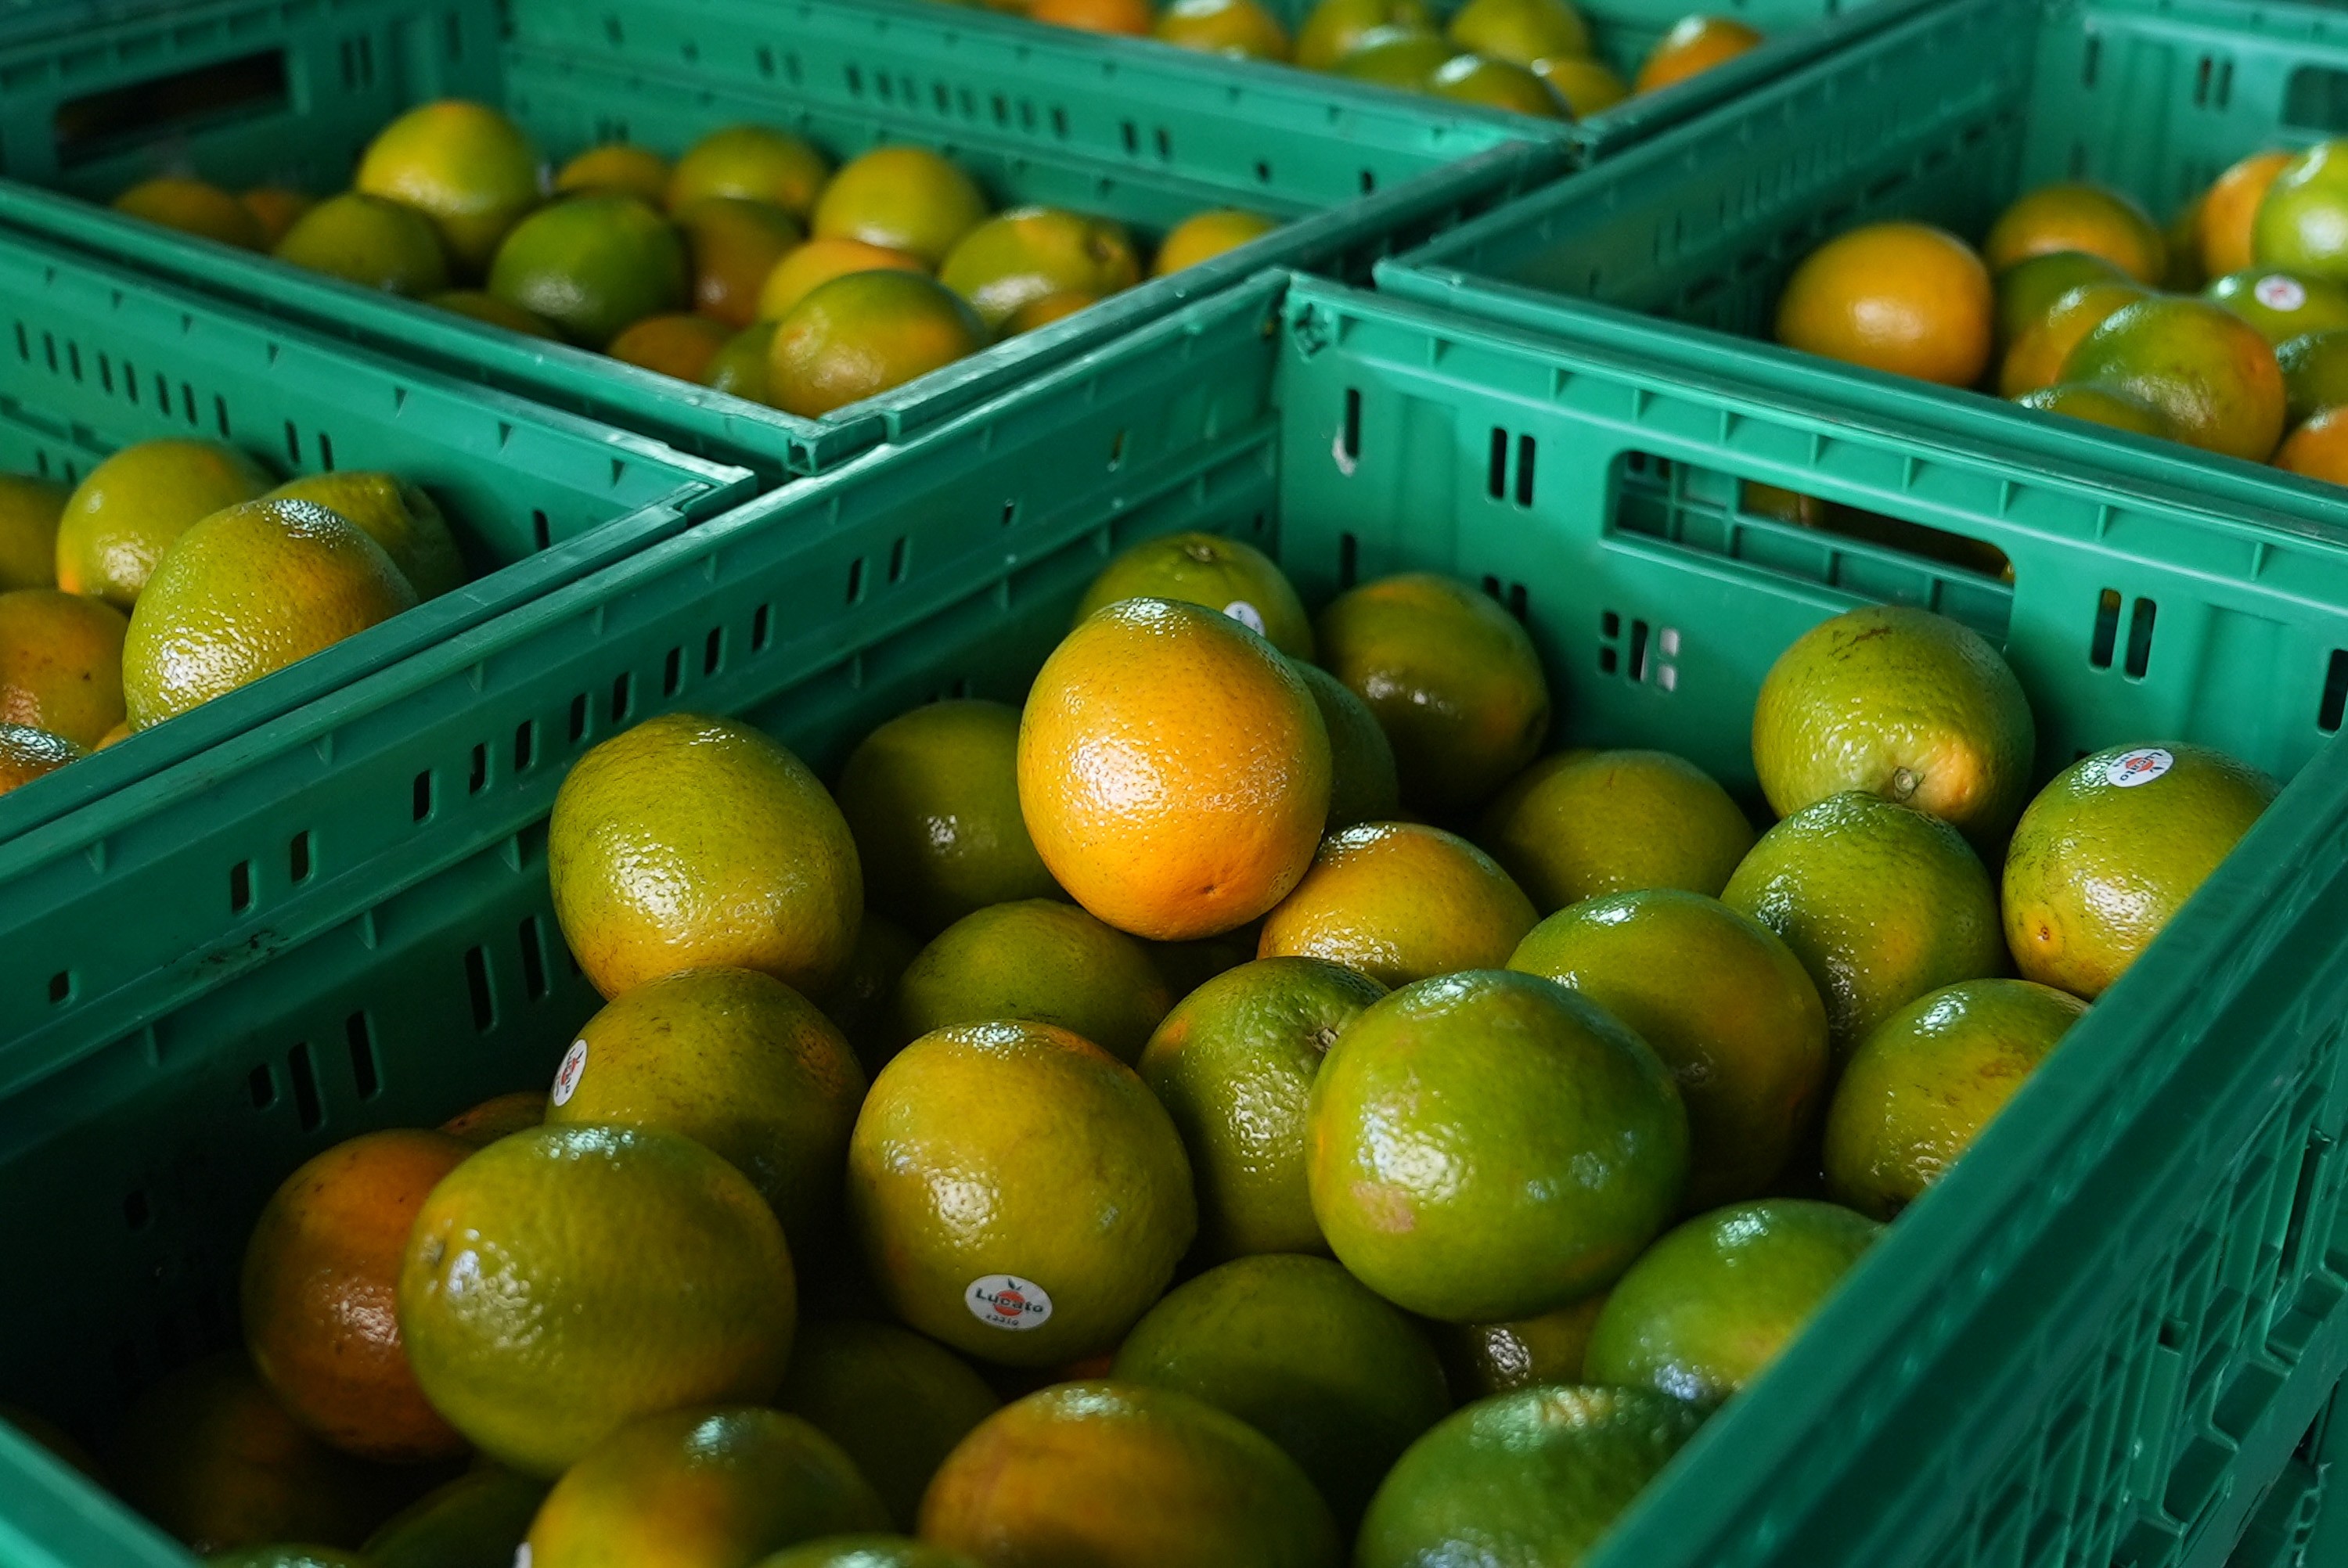 Problemas climáticos enfrentados por Peru, Equador e Espanha impulsionam exportações de frutas do Brasil, aponta USP